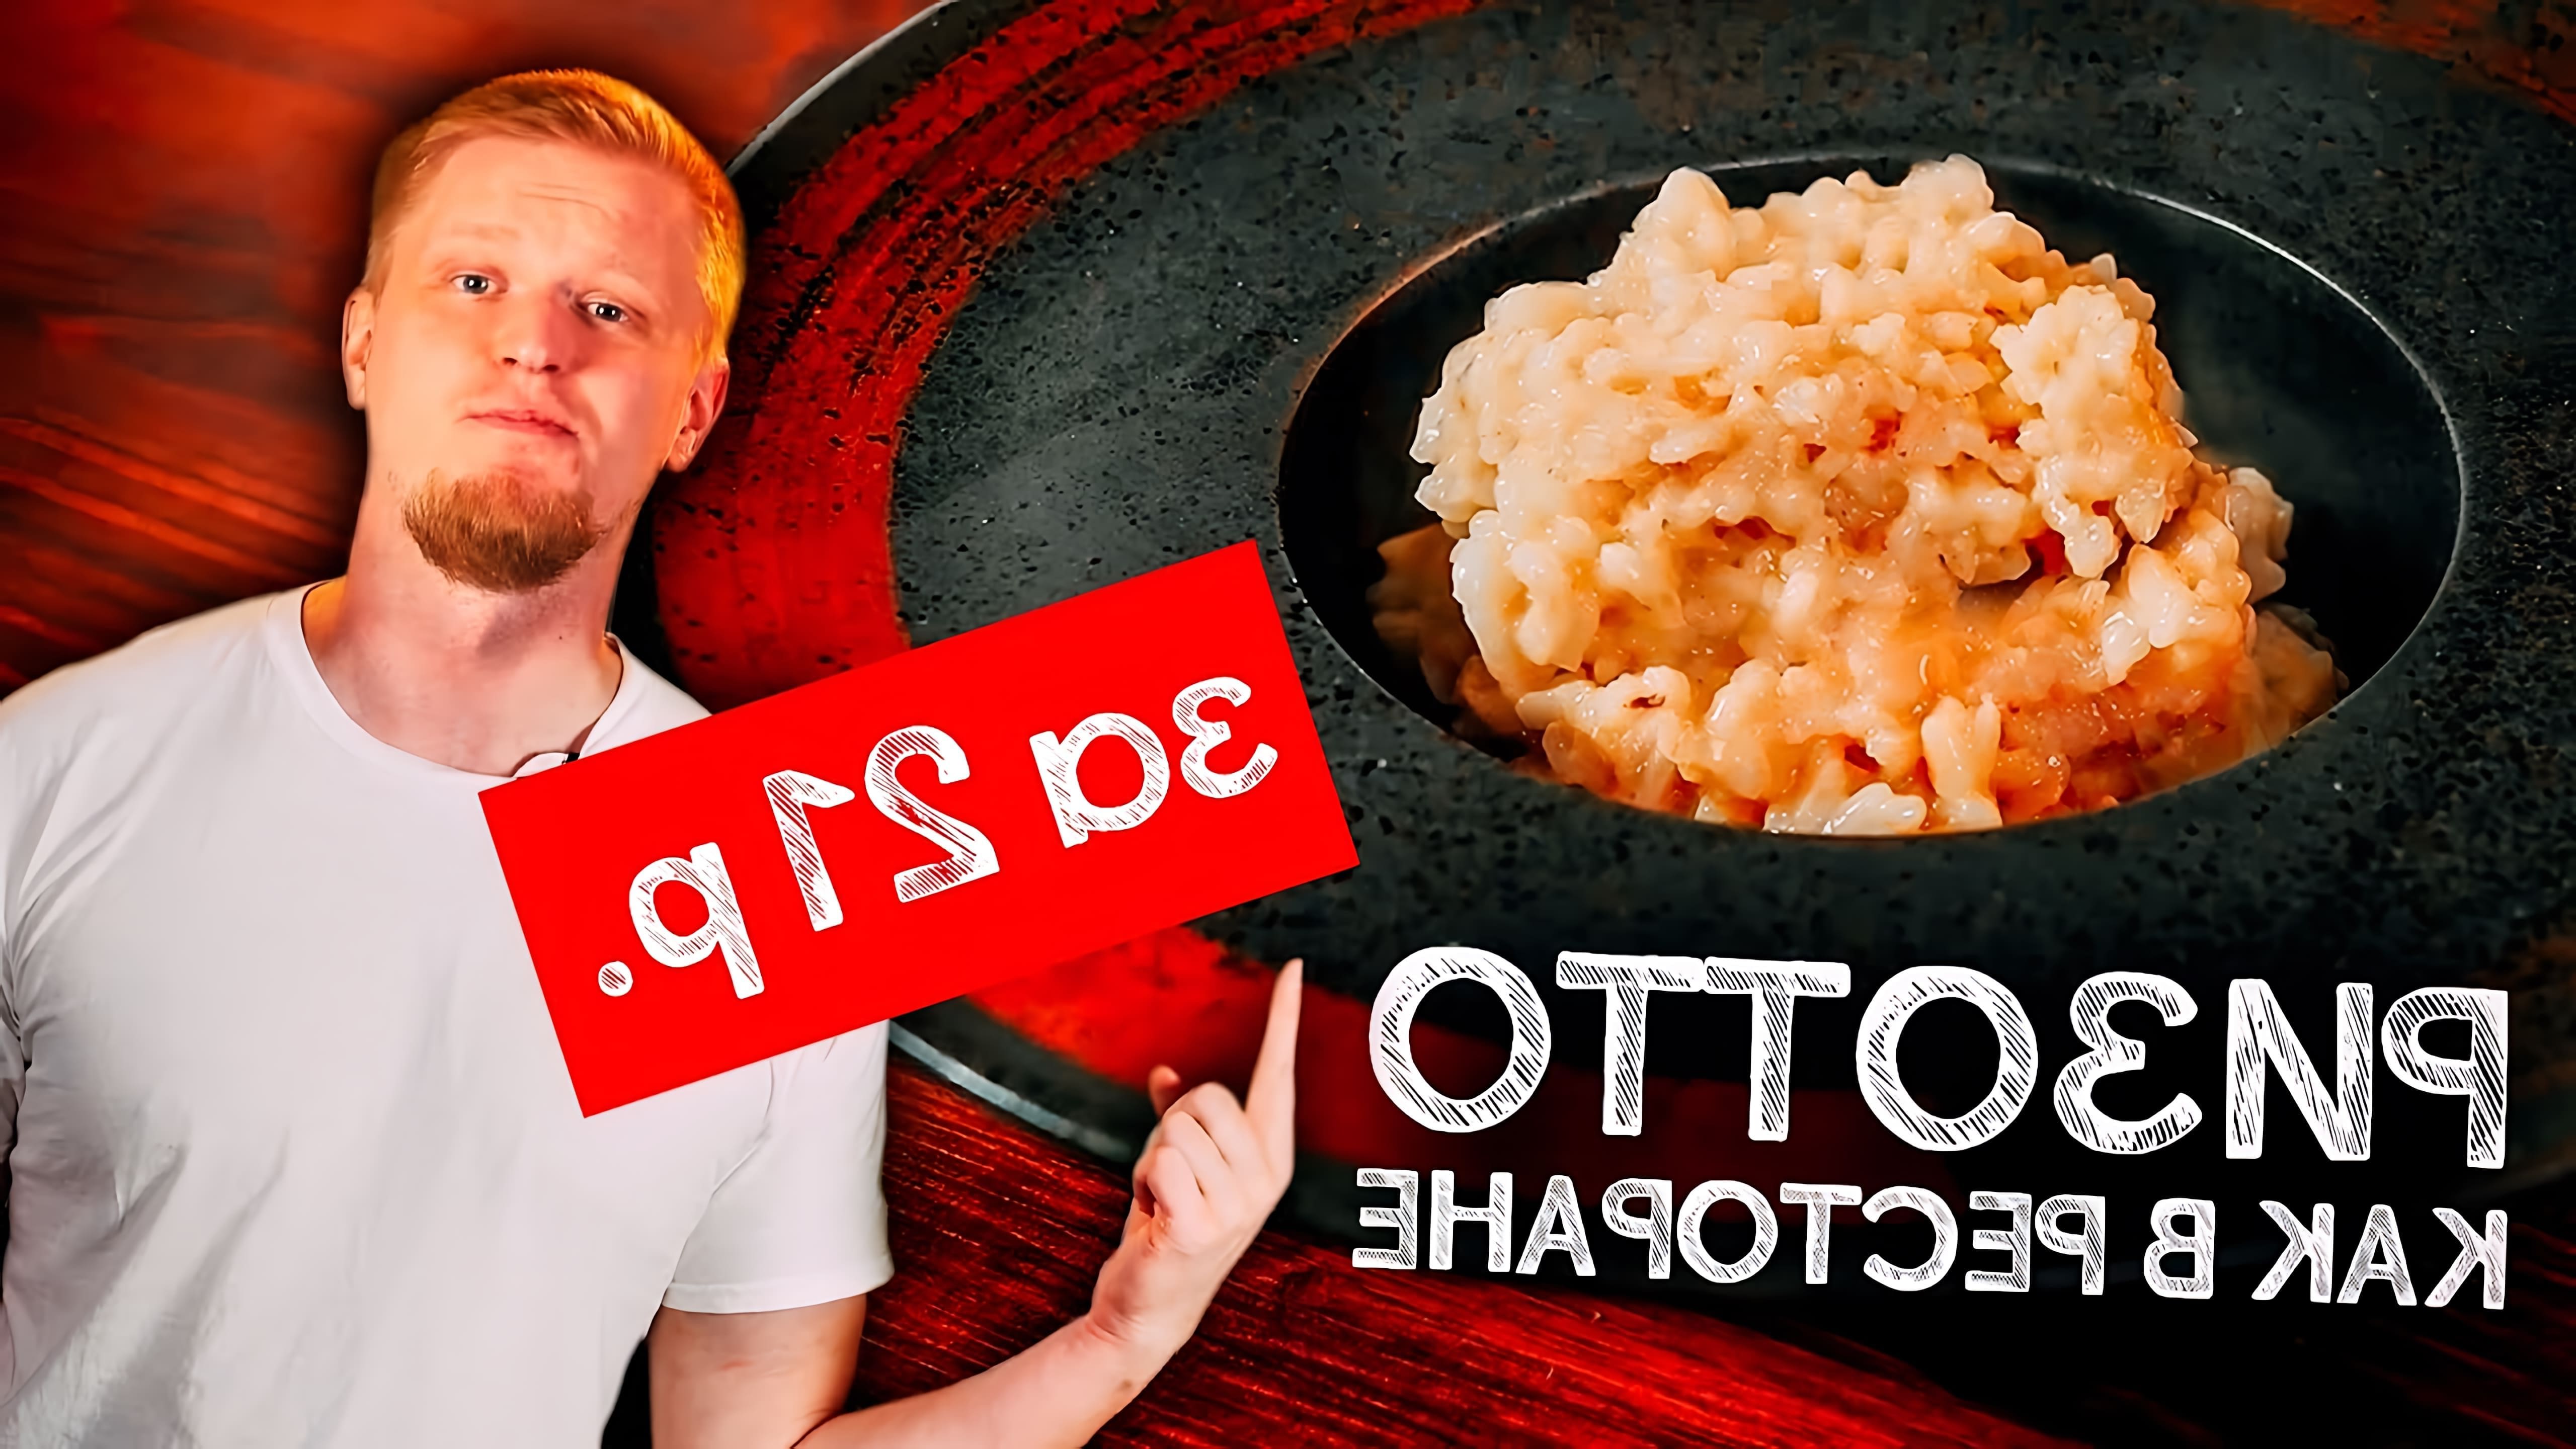 В этом видео общажный повар демонстрирует рецепт ризотто, который можно приготовить всего за 21 рубль